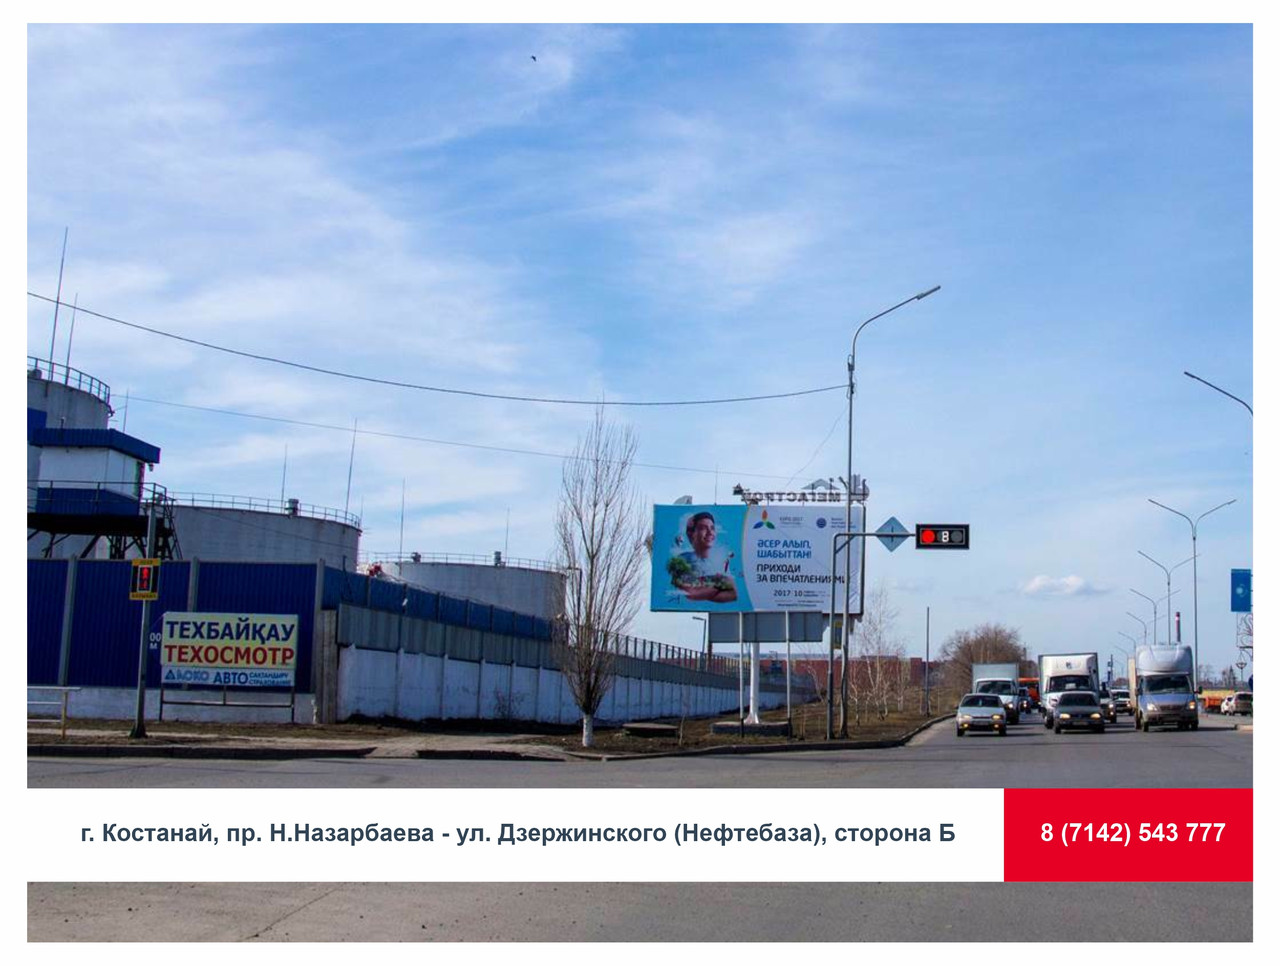 Аренда билборда г. Костанай, пр. Н.Назарбаева - ул. Дзержинского (Нефтебаза), сторона Б